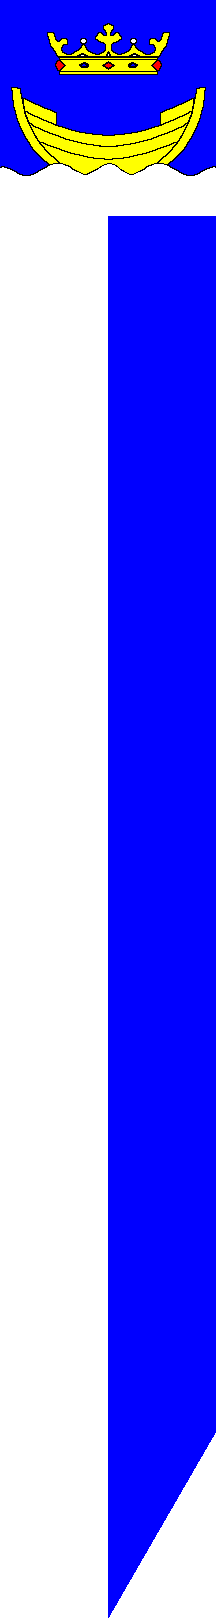 [Flag of Helsinki]